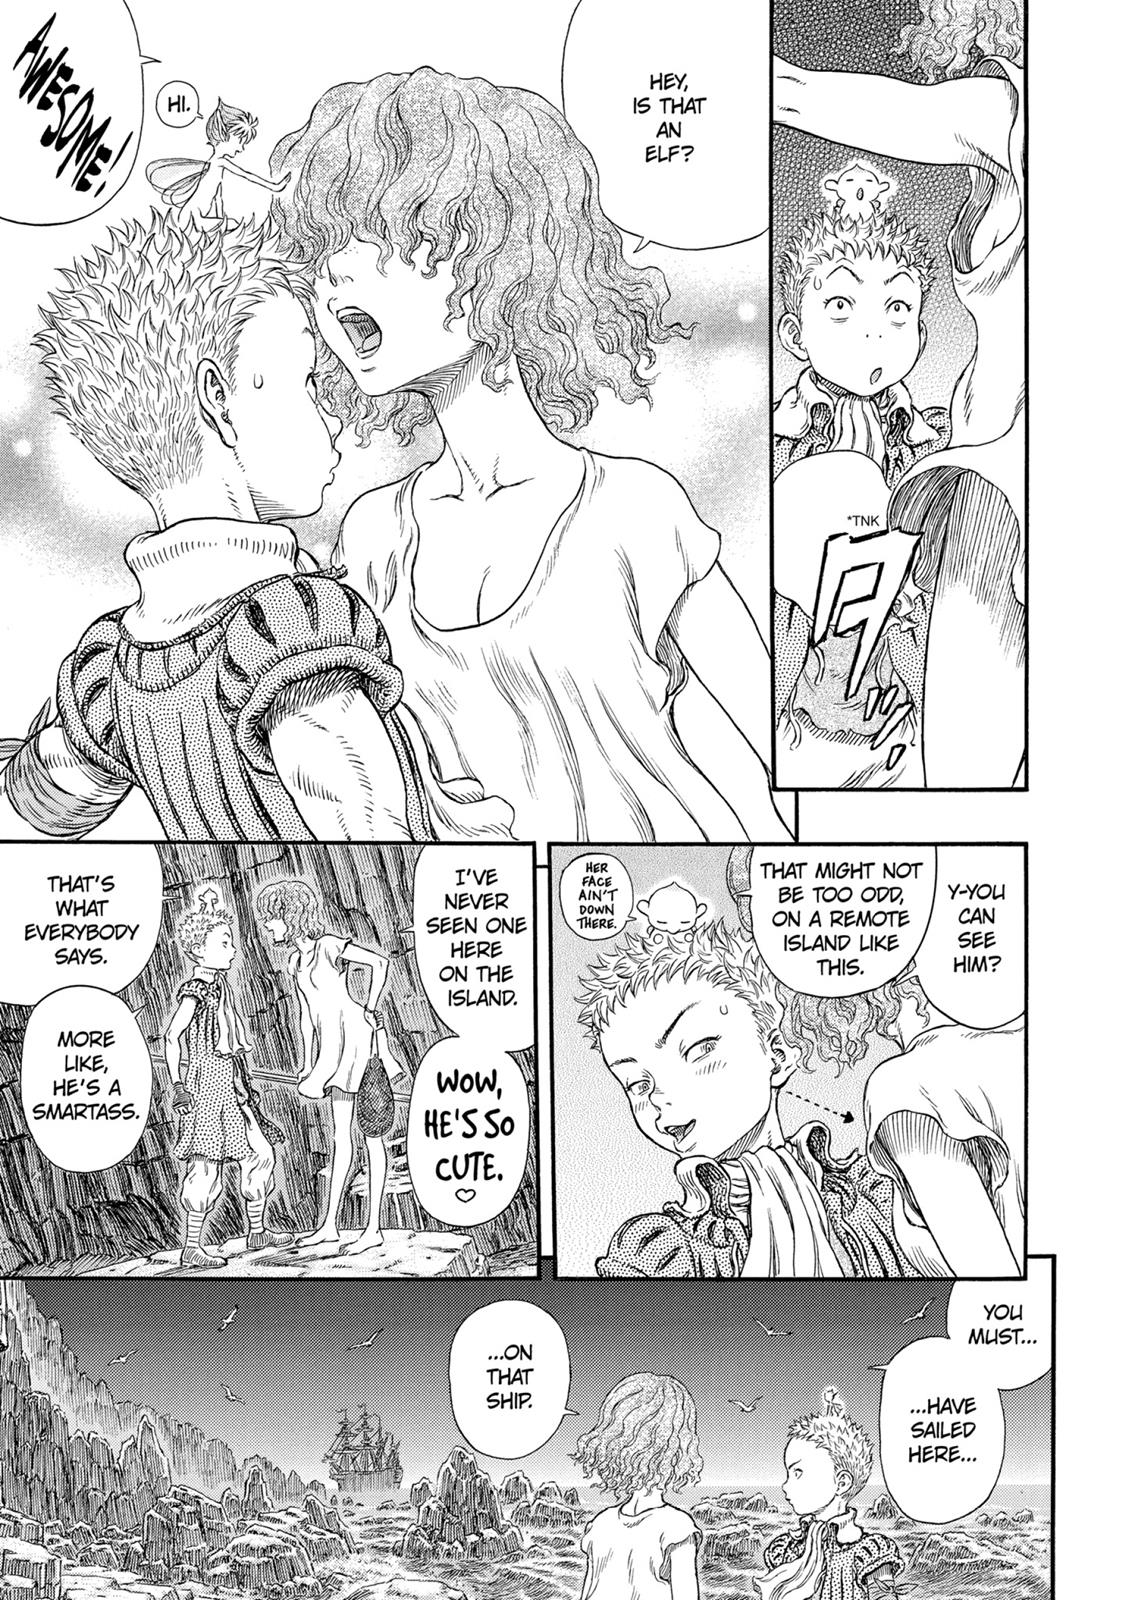 Berserk Manga Chapter 311 image 16